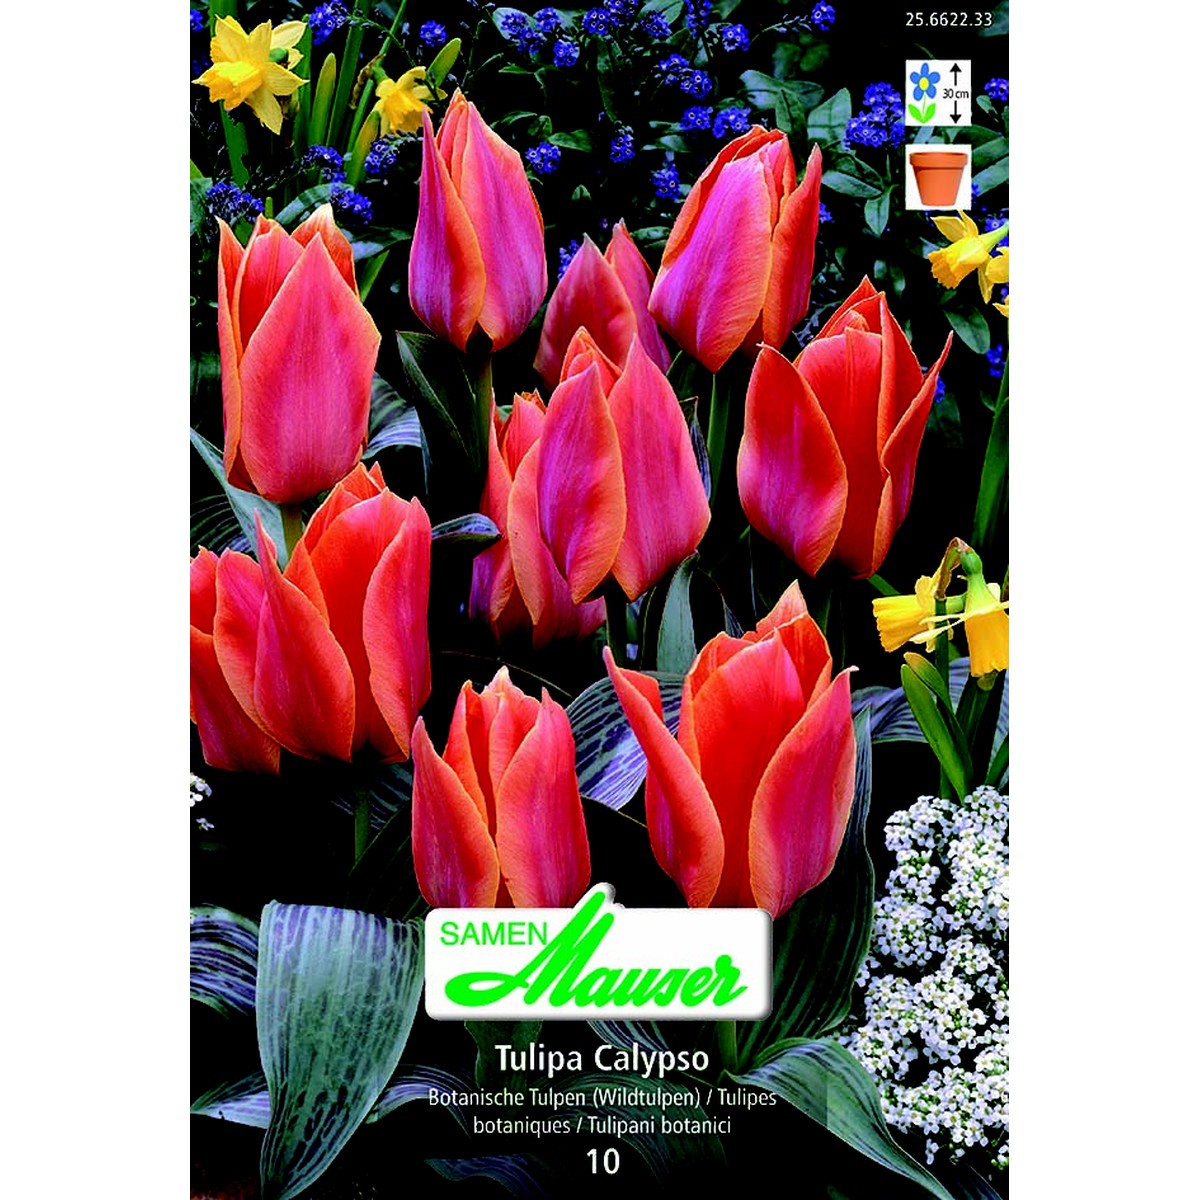   Tulipe botanique Calypso 10  12/